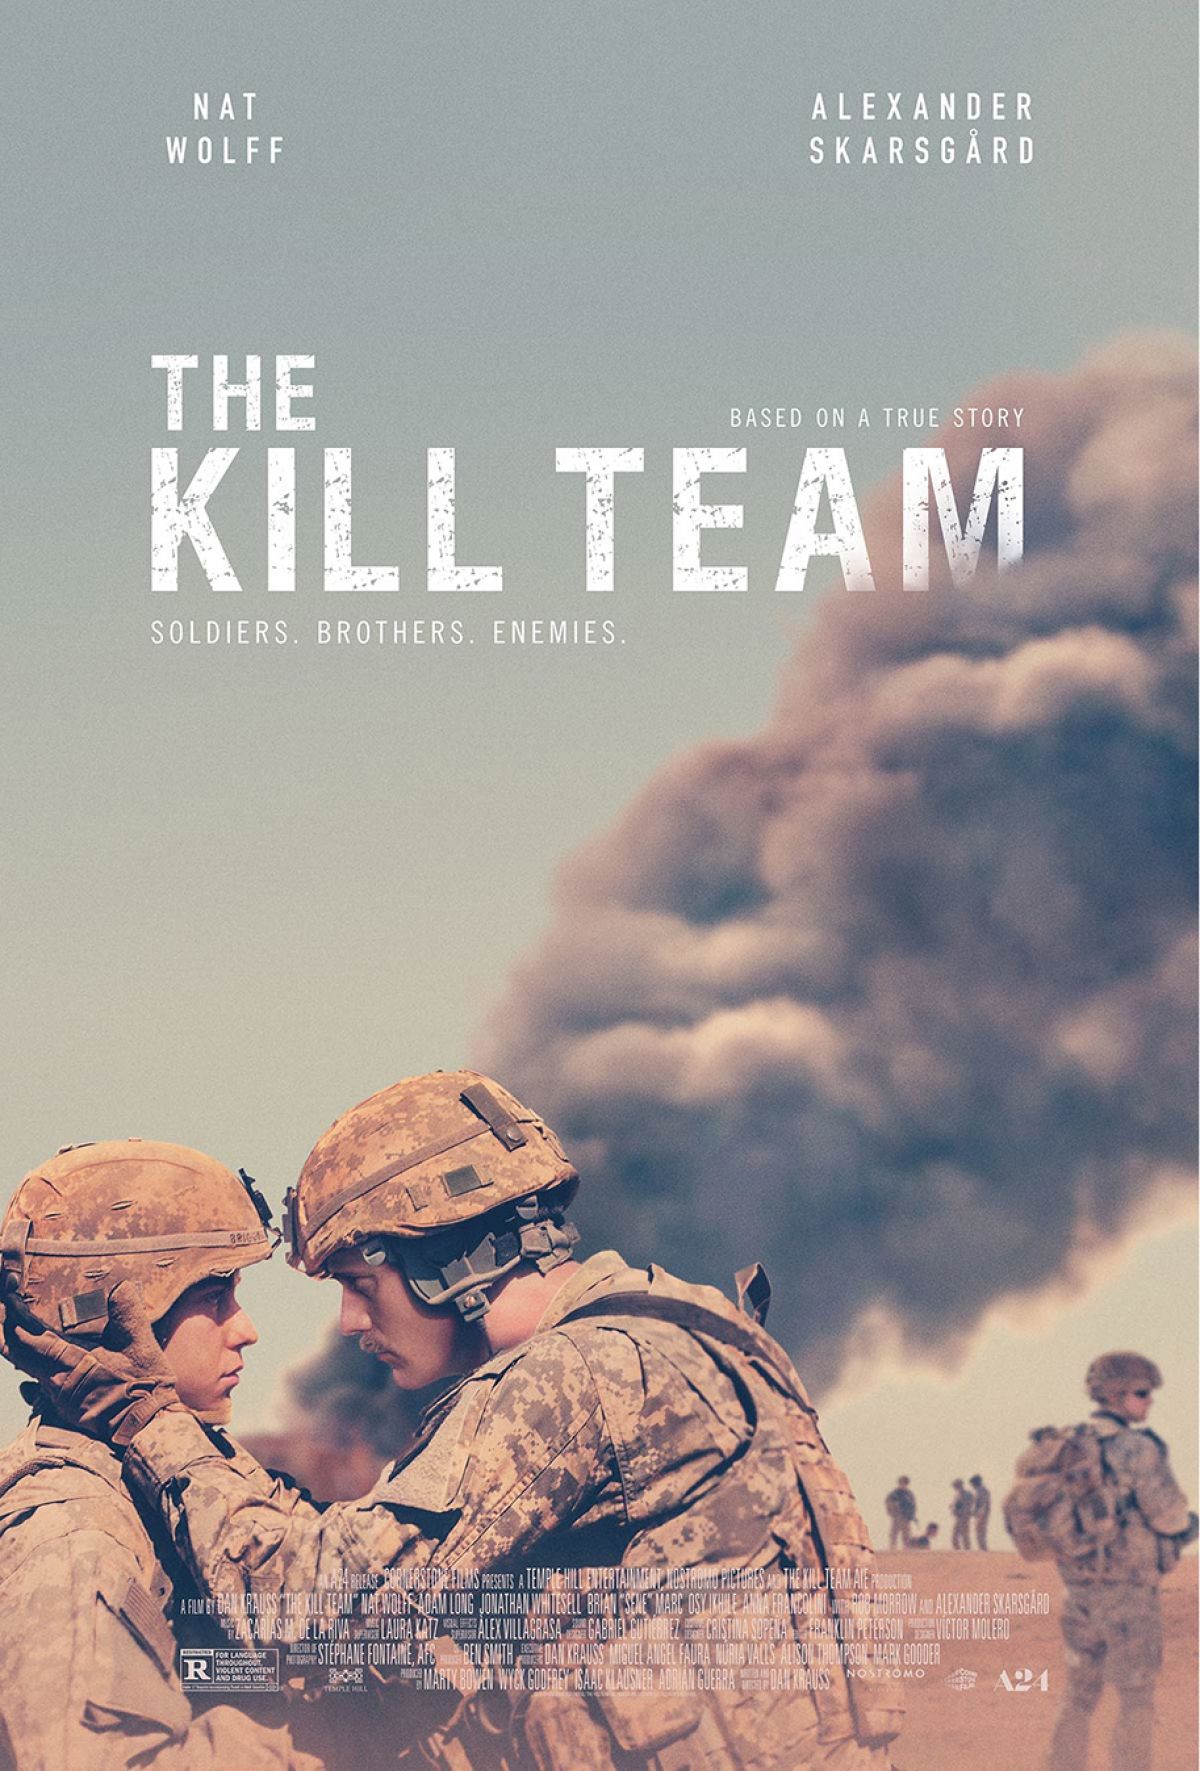 Americkí vojaci vraždia v Afganistane nevinných. Dráma Kill Team zobrazuje psychický nátlak na mladíkov nútených zabíjať na rozkaz